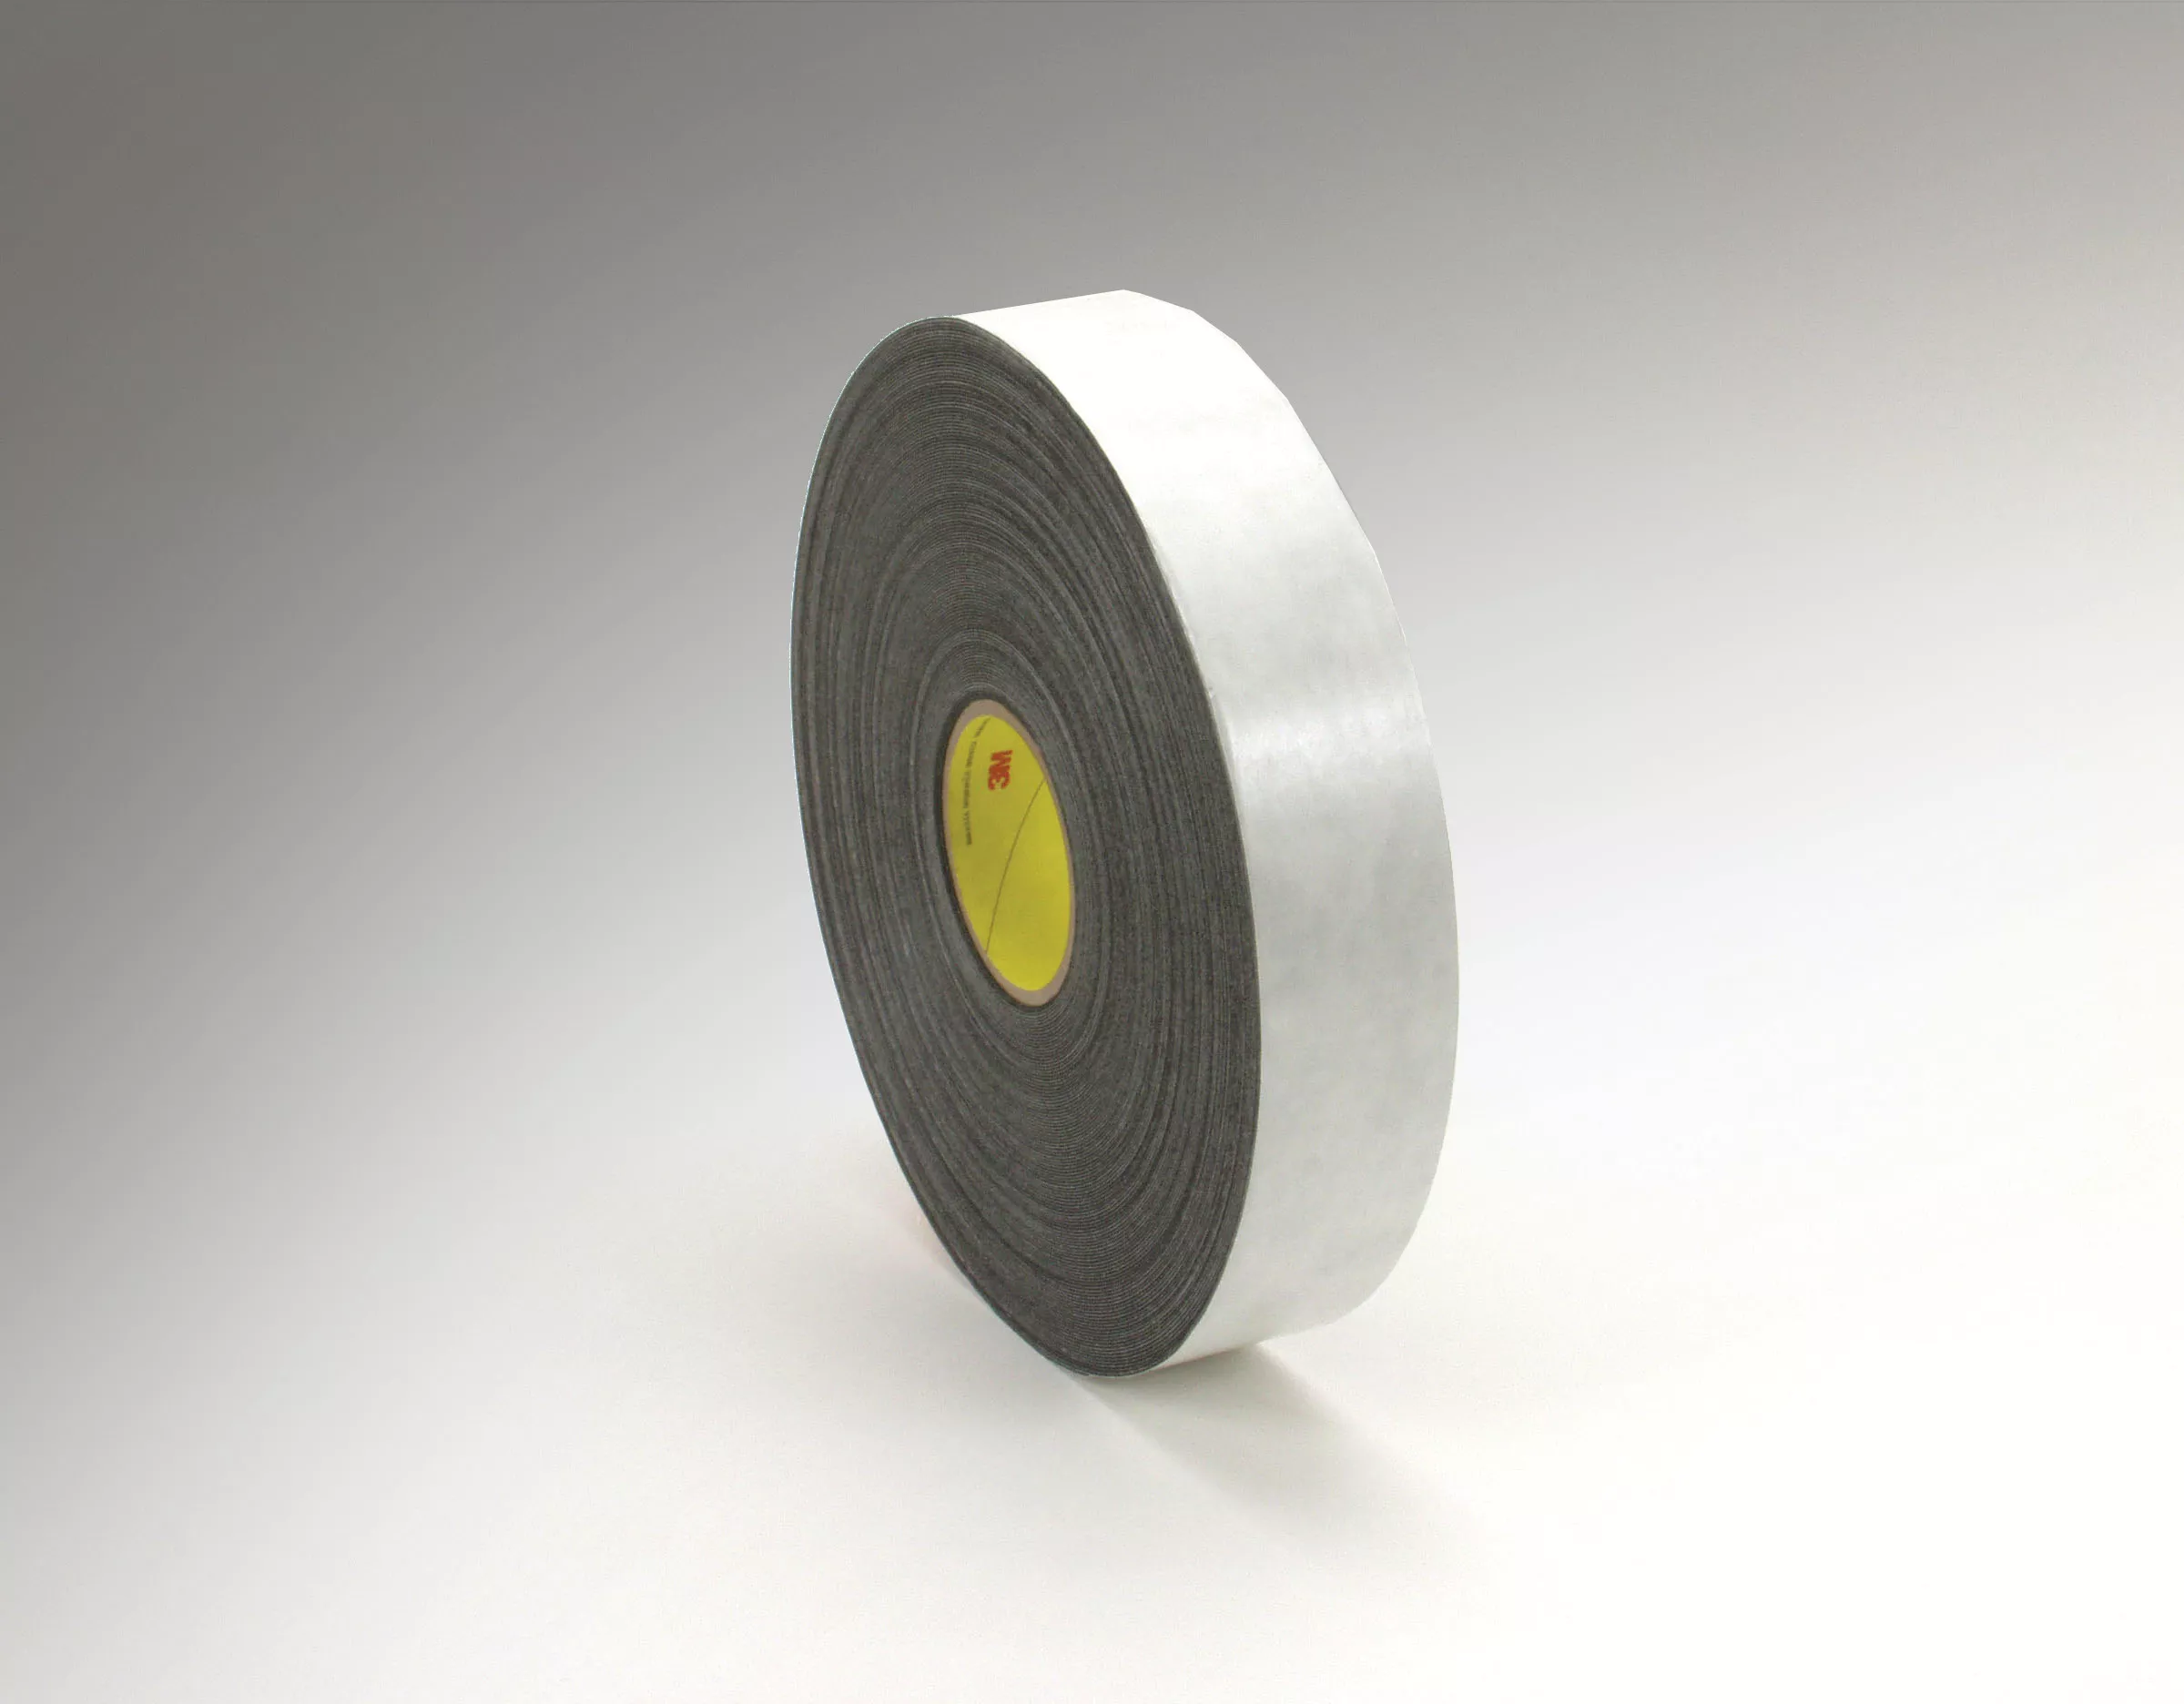 3M™ Double Coated Polyethylene Foam Tape 4462, Black, 1/2 in x 72 yd, 31
mil, 18 Roll/Case